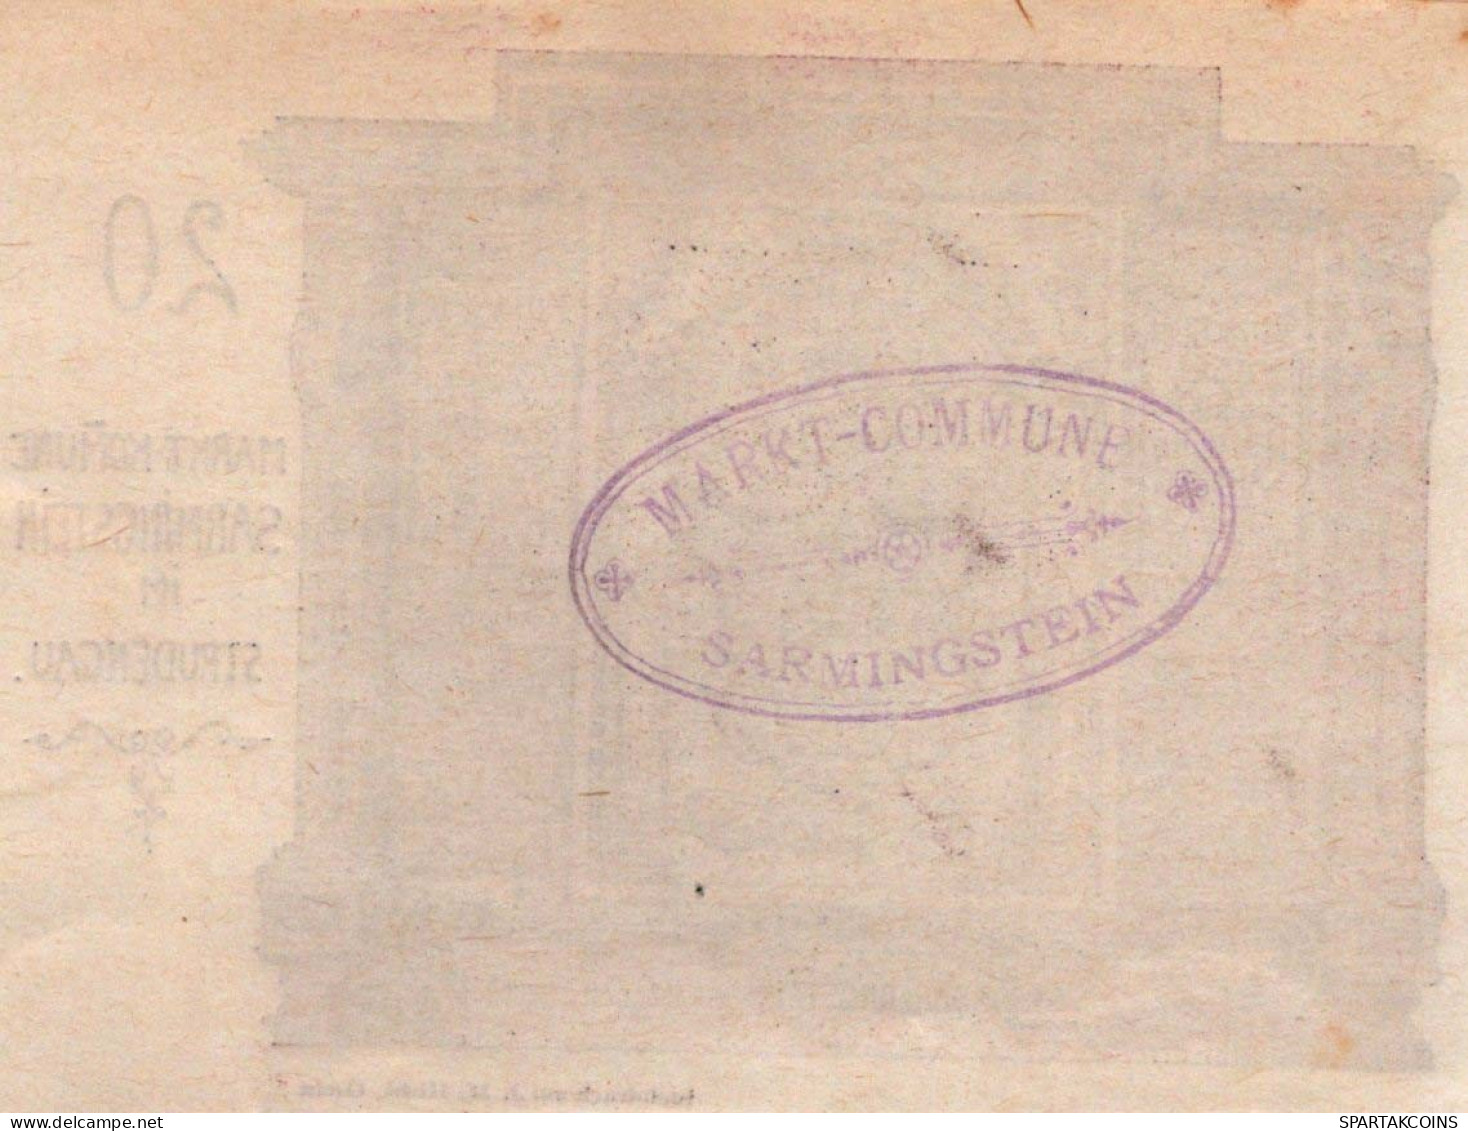 20 HELLER 1920 Stadt SANKT NIKOLA AN DER DONAU Oberösterreich Österreich #PE782 - [11] Local Banknote Issues